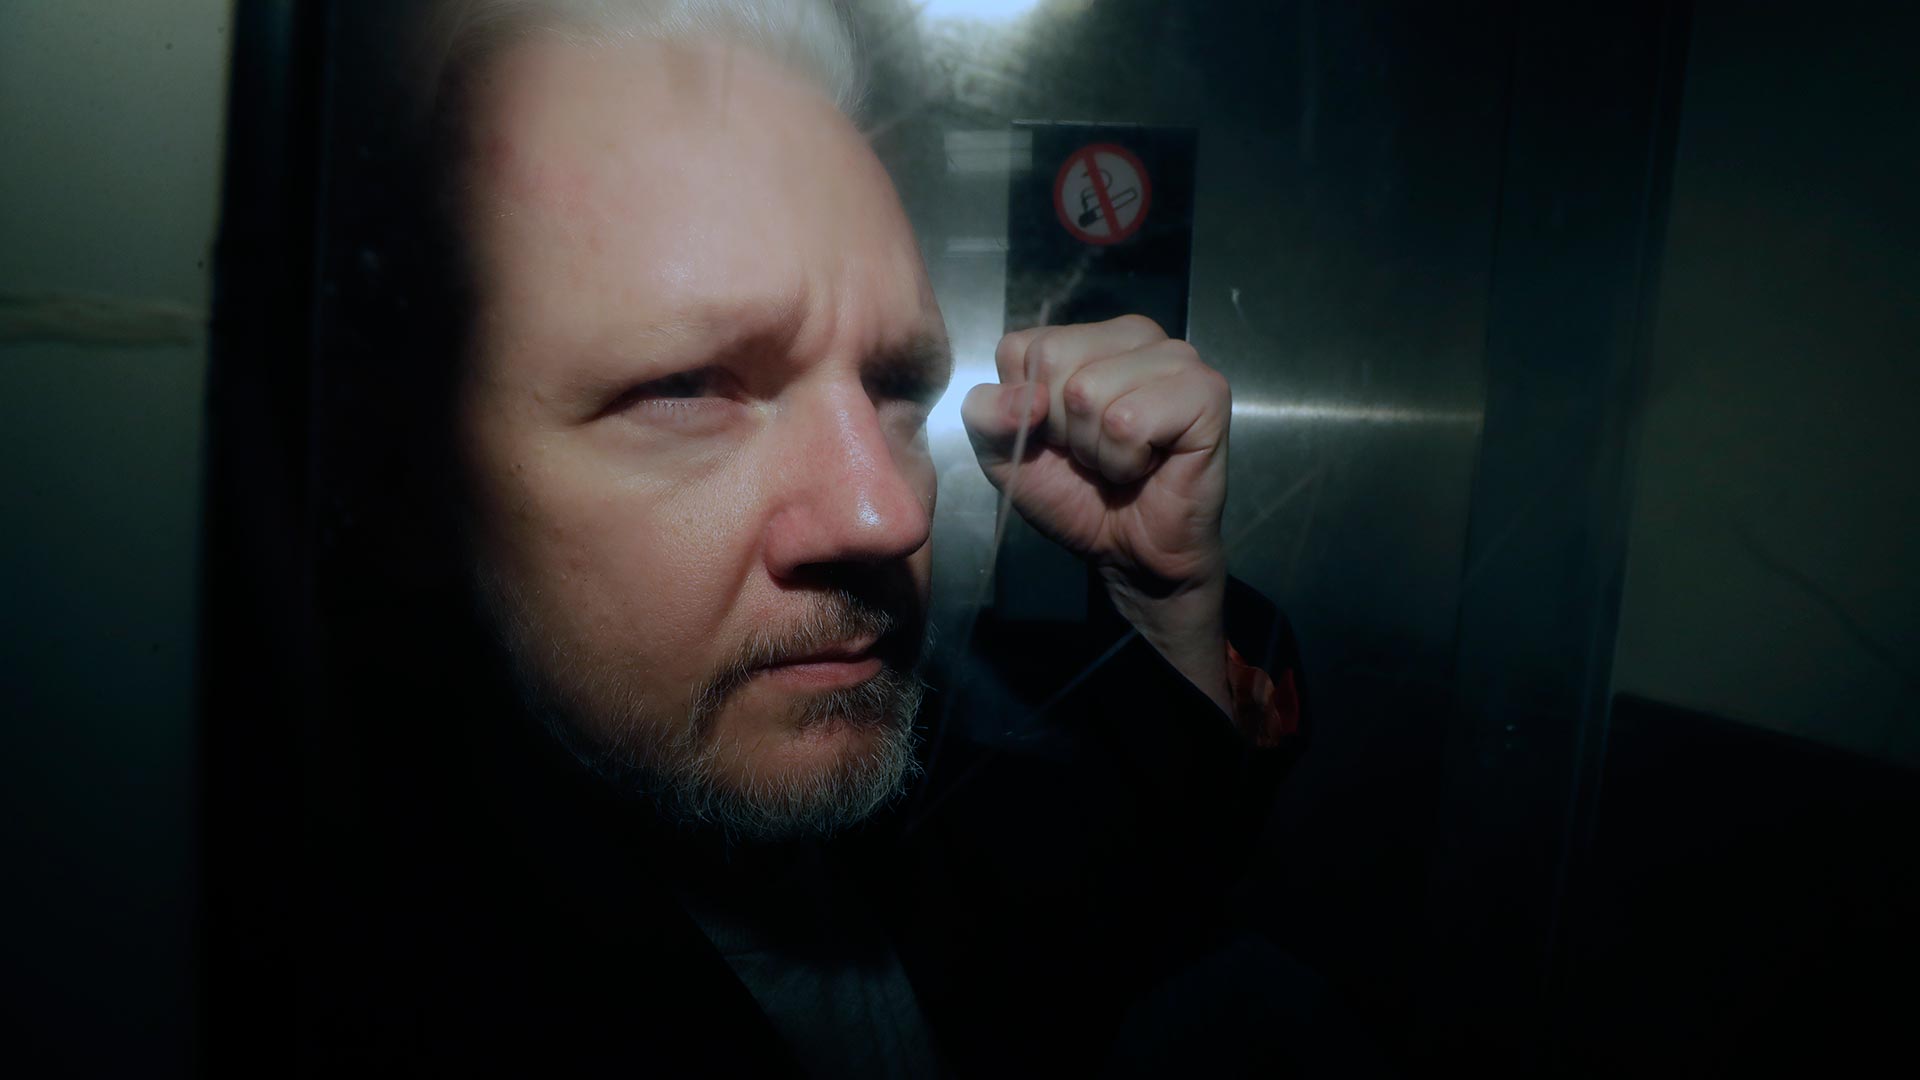 Assange, condenado a 50 semanas de cárcel por violar la libertad condicional en 2012